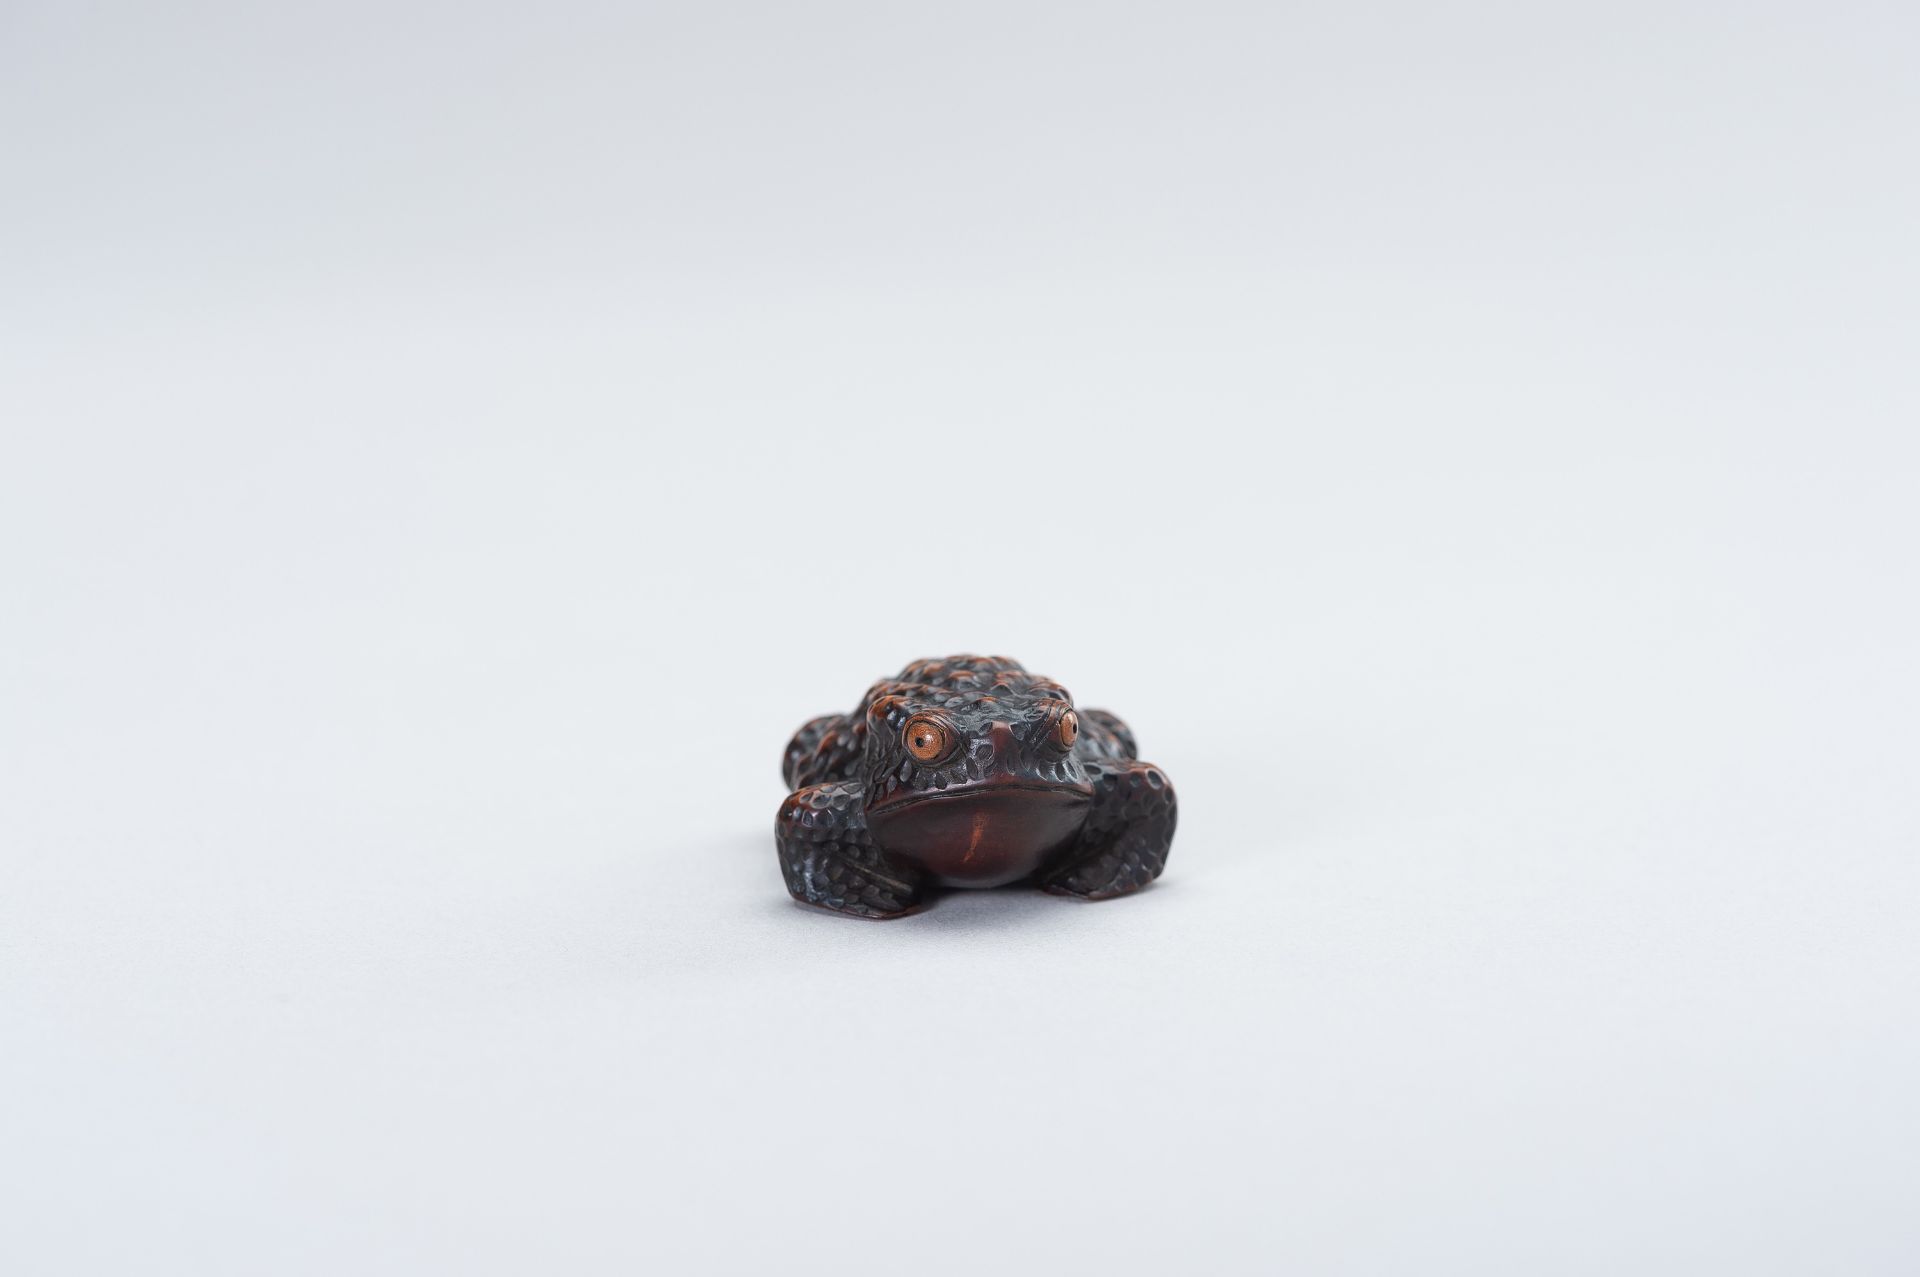 SHIGETADA: A WOOD NETSUKE OF A TOAD - Image 12 of 14